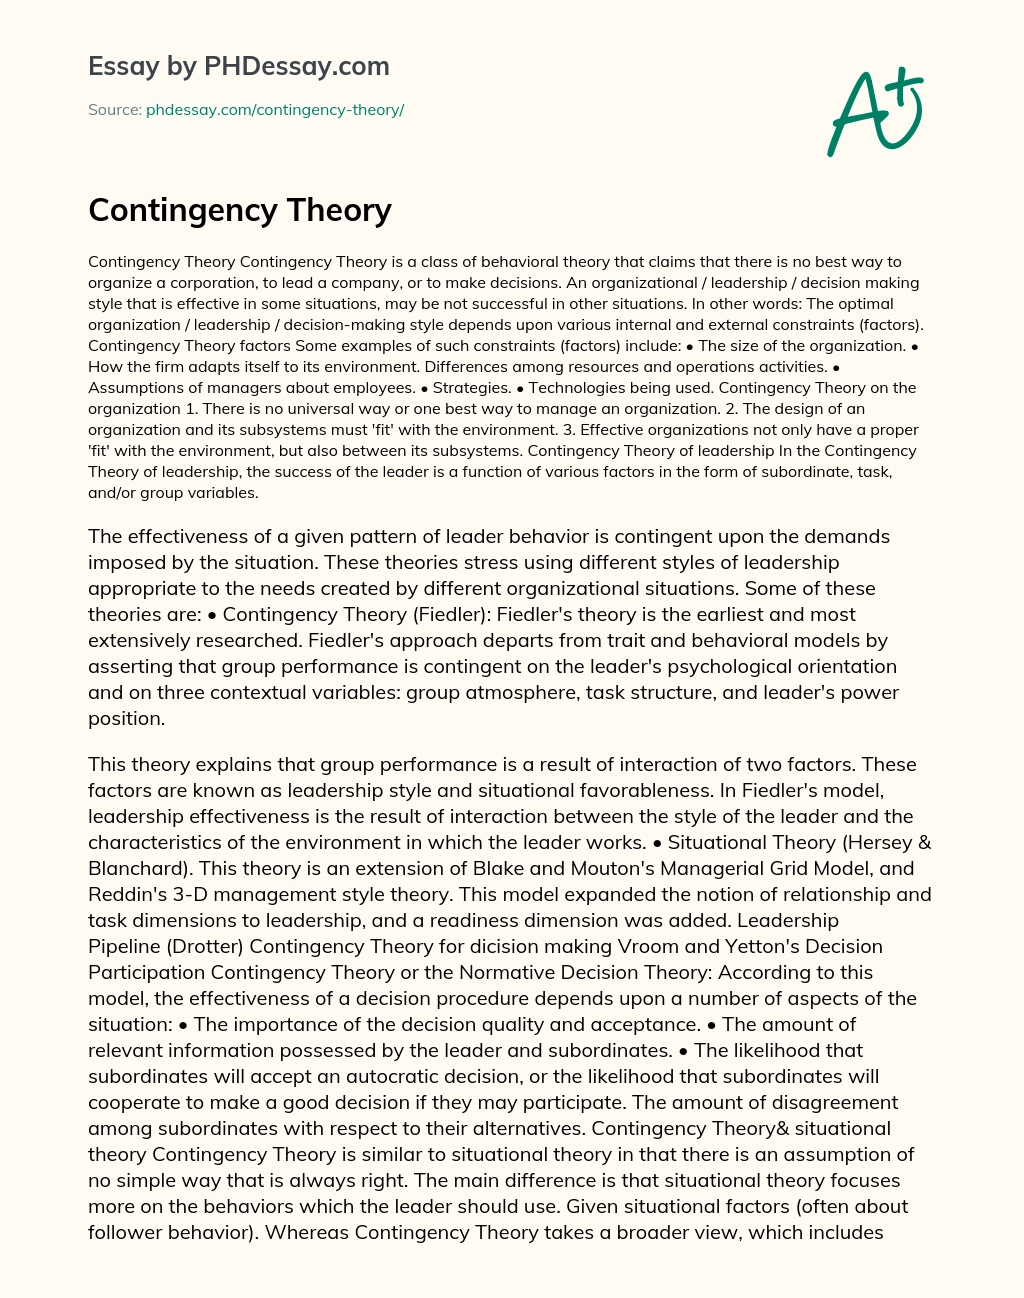 Contingency Theory essay